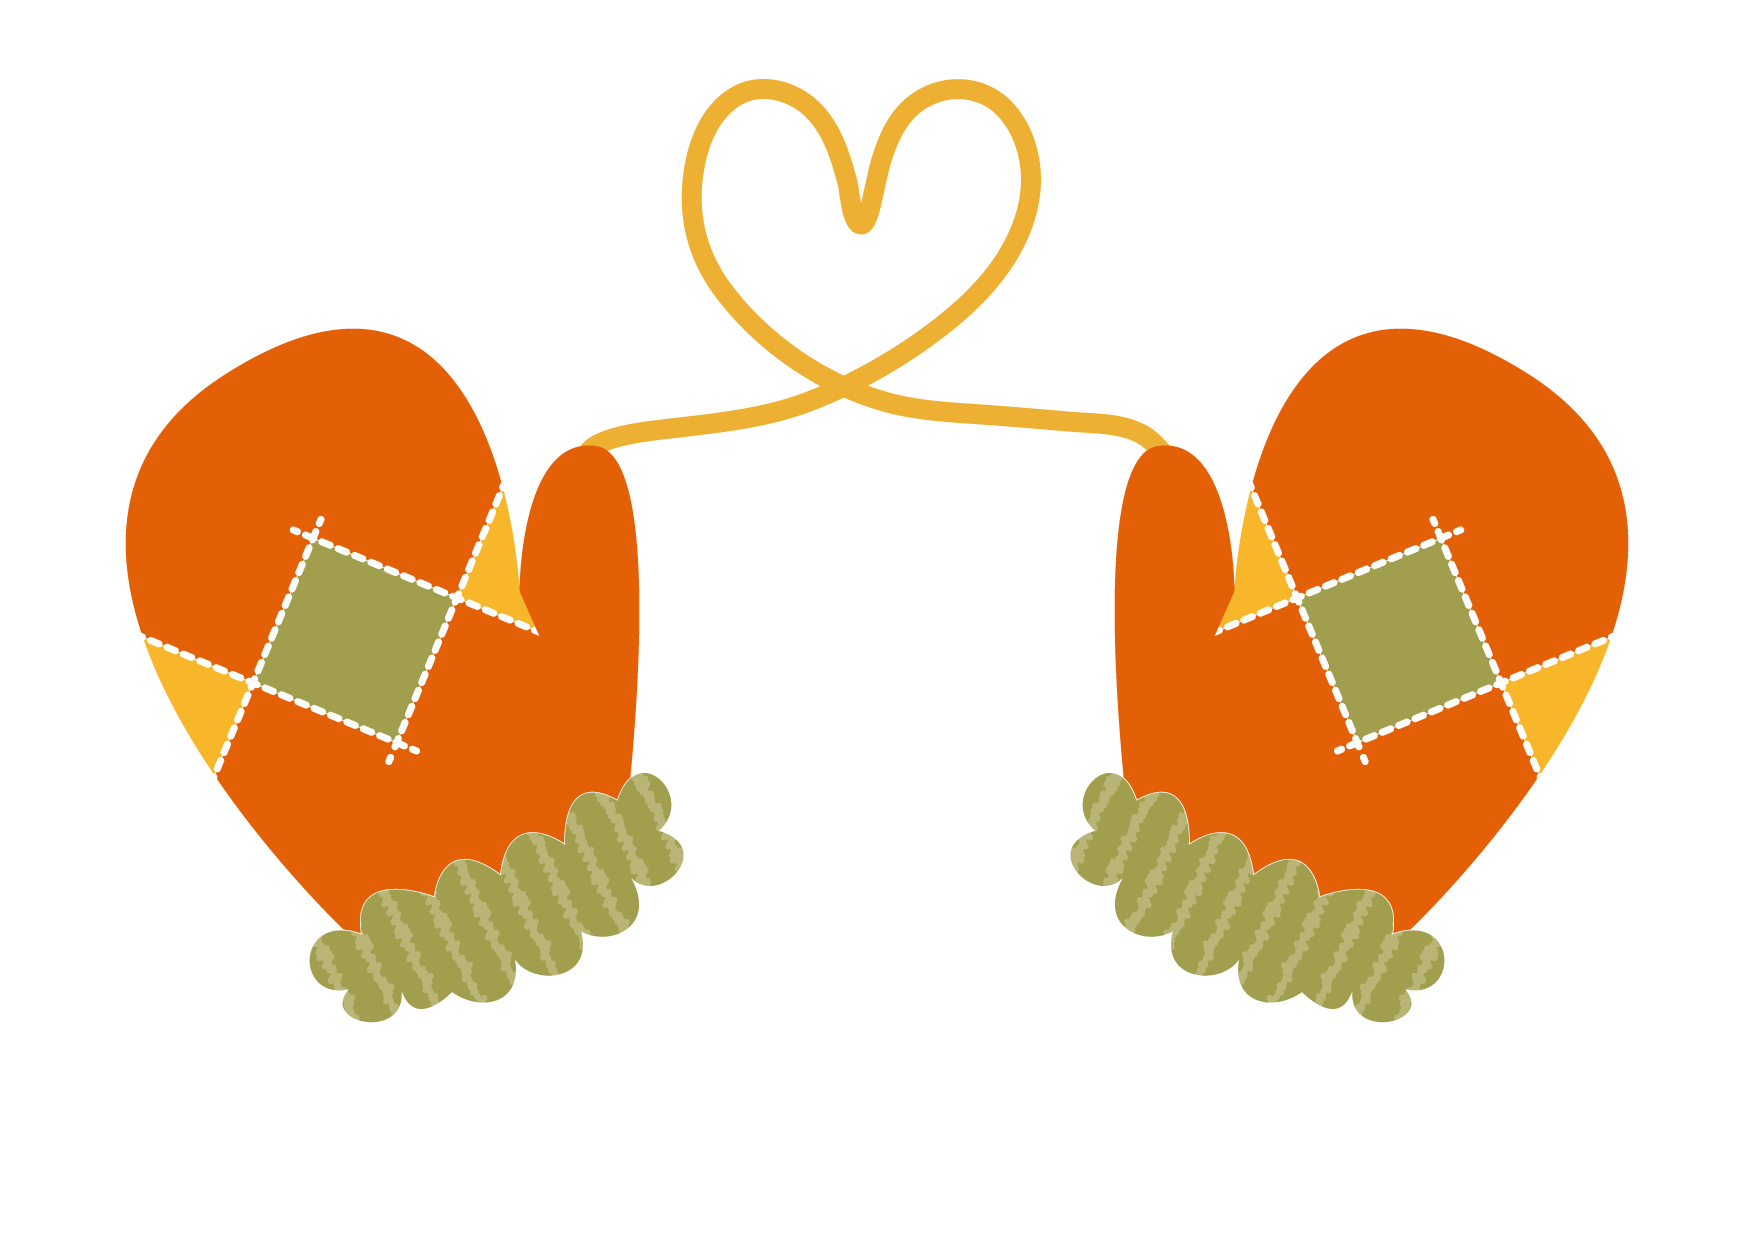 可愛いイラスト無料 手袋 ハート オレンジ色 Free Illustration Gloves Heart Orange 公式 イラスト素材サイト イラストダウンロード